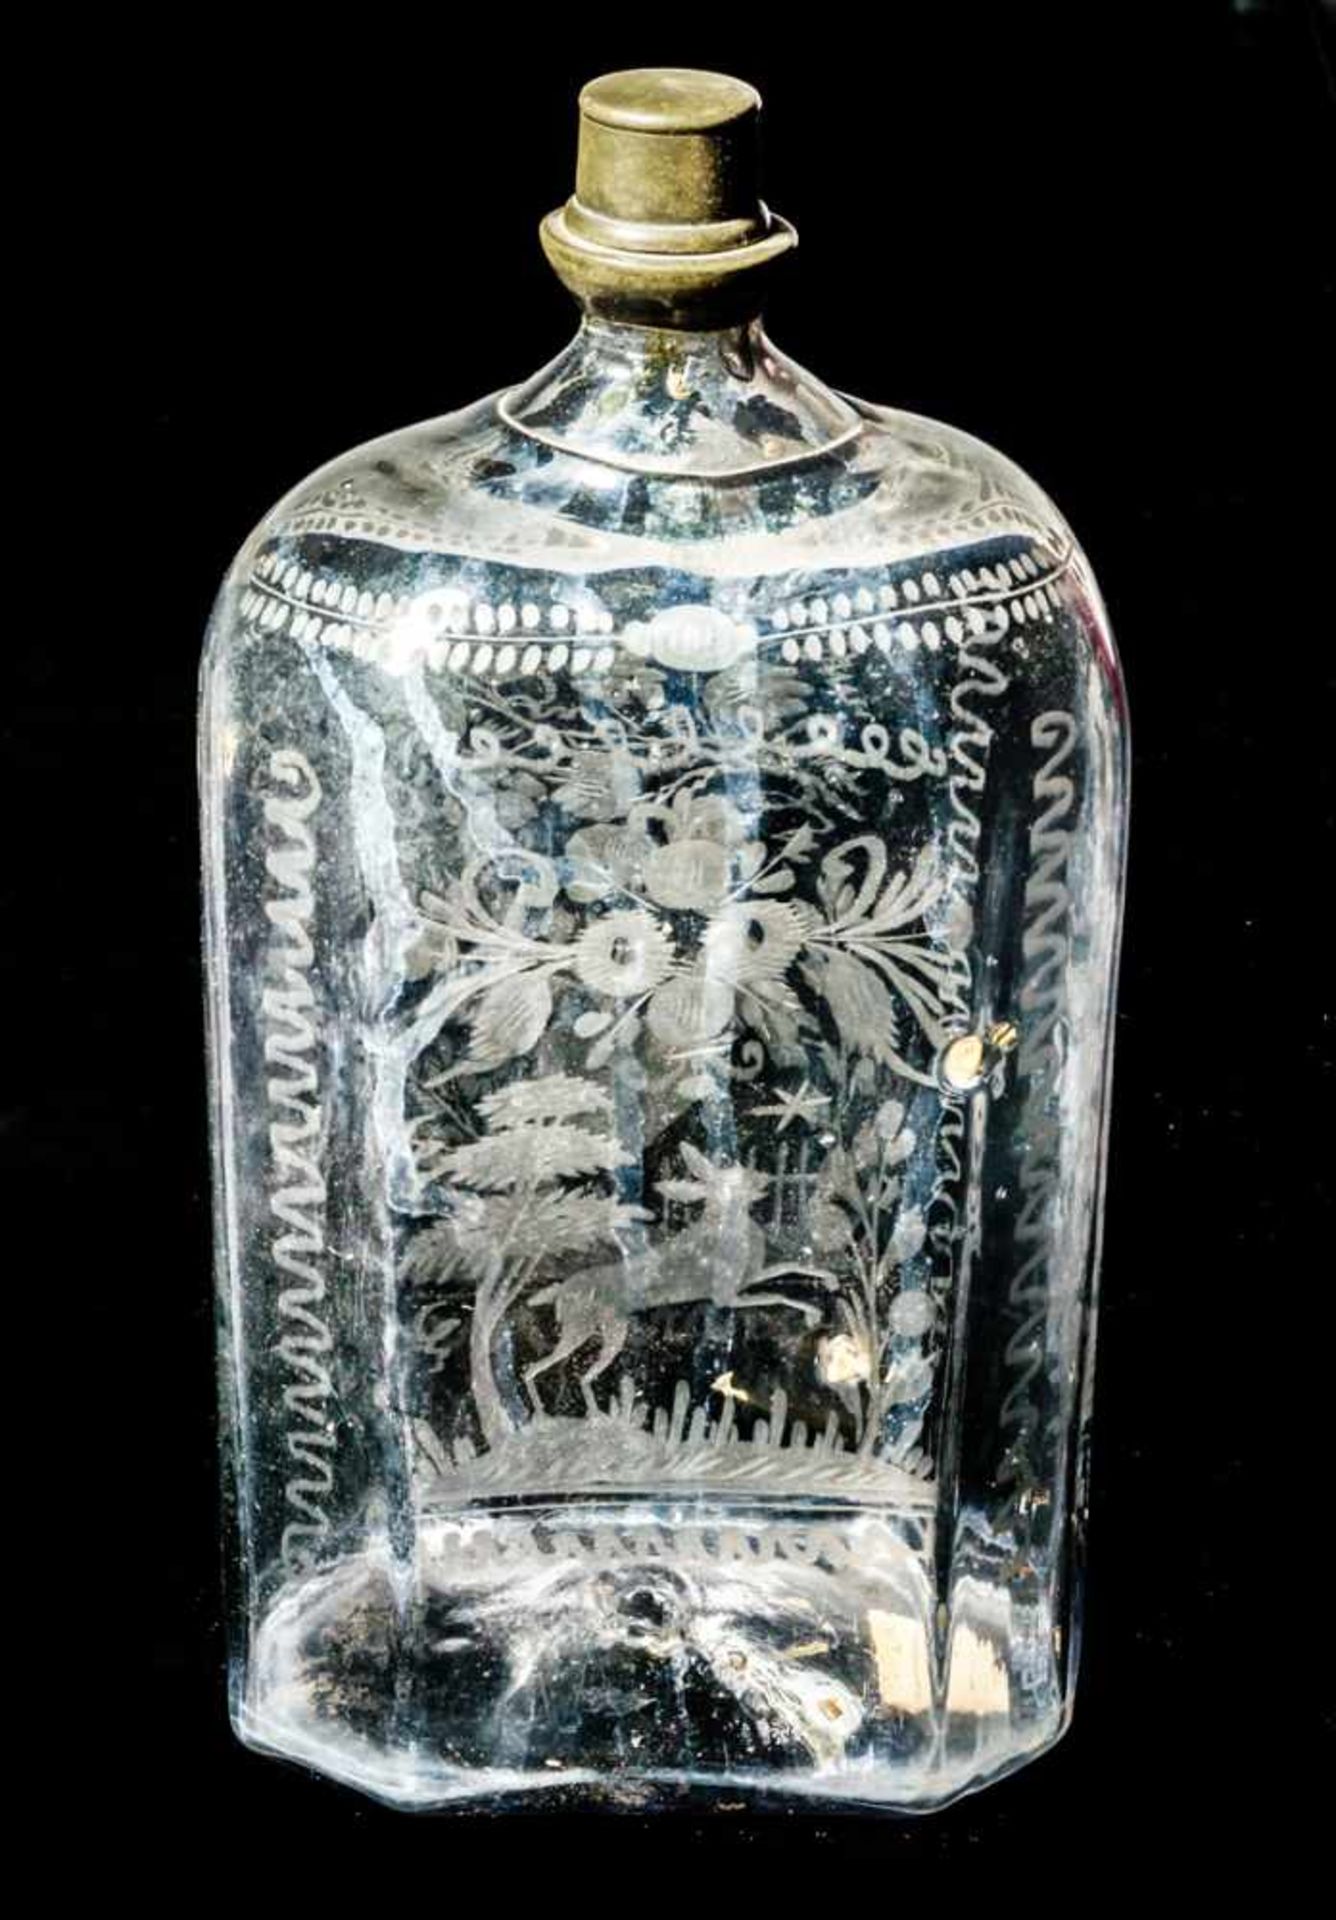 Schnapsflasche wohl Böhmen, frühes 19. Jh. 24 x 11,5 x 8,5 cmProvenienz: Sammlung Dr. Dorothea